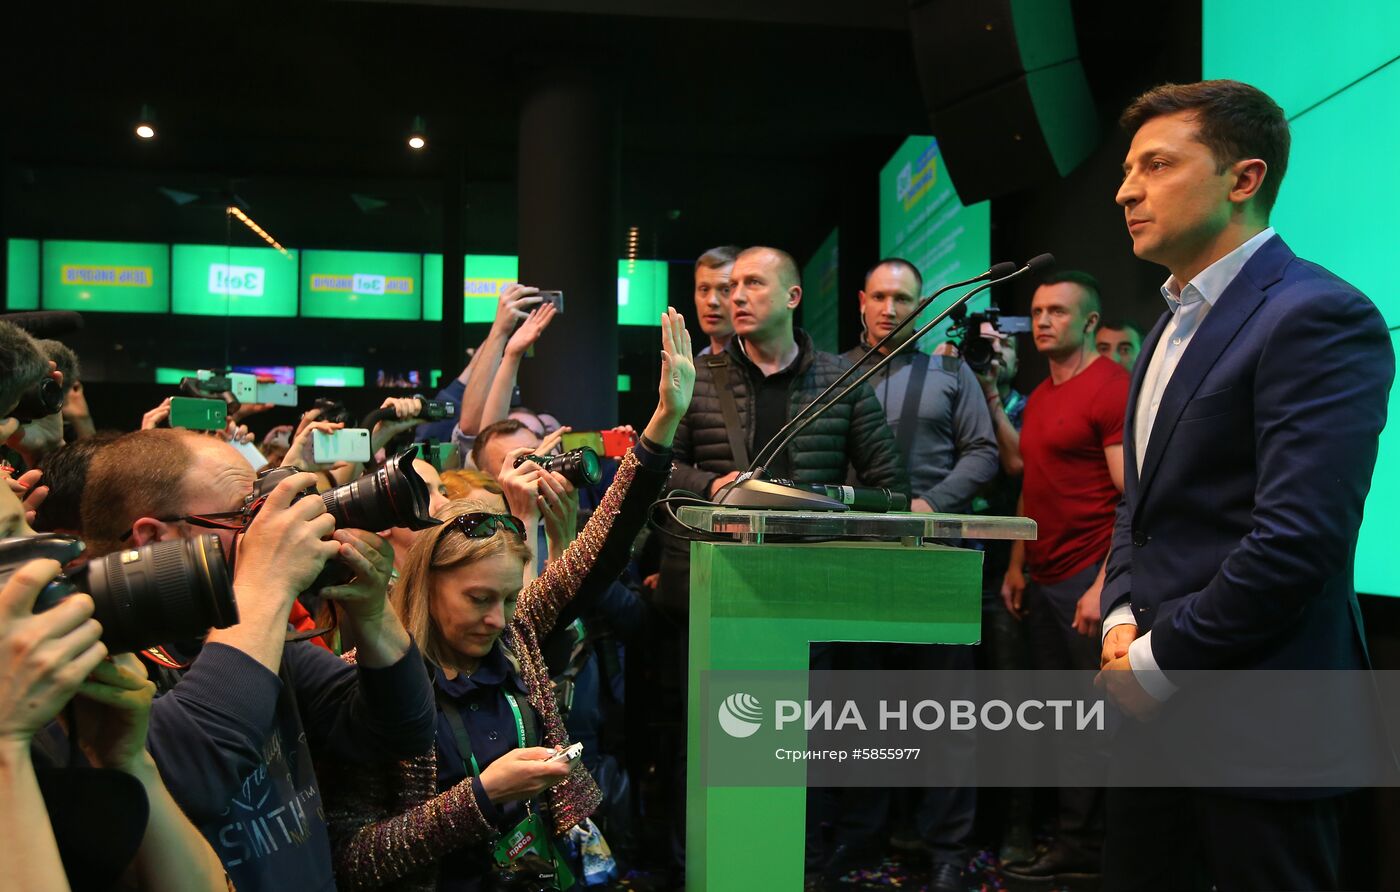 Брифинг В. Зеленского после оглашения предварительных итогов голосования